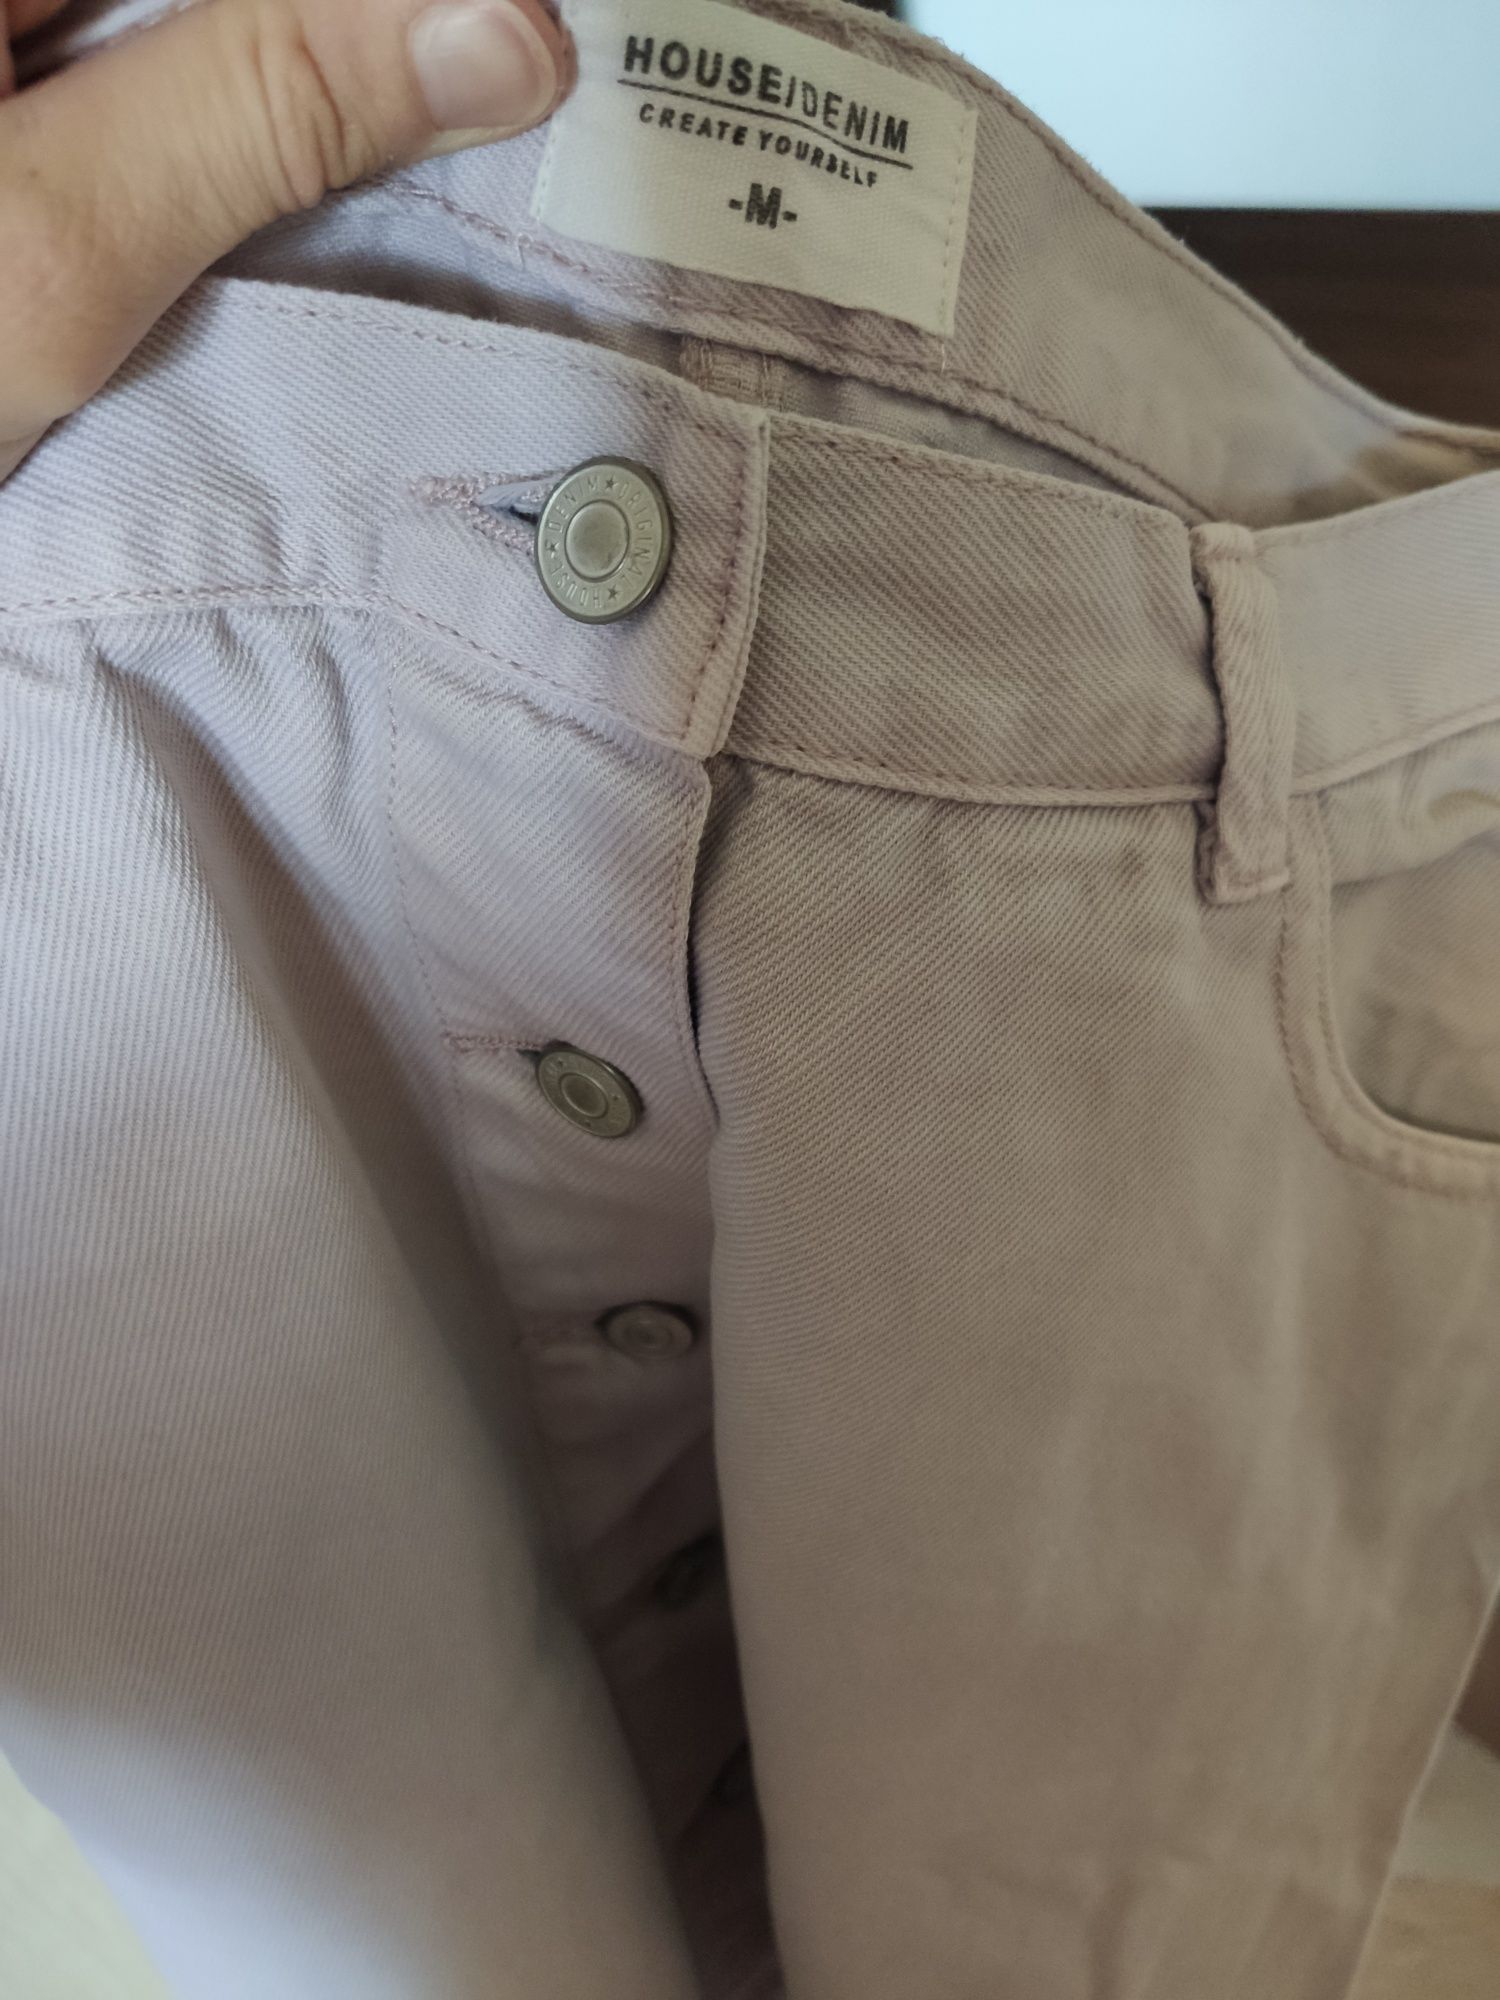 Liliowa jeansowa spódnica mini